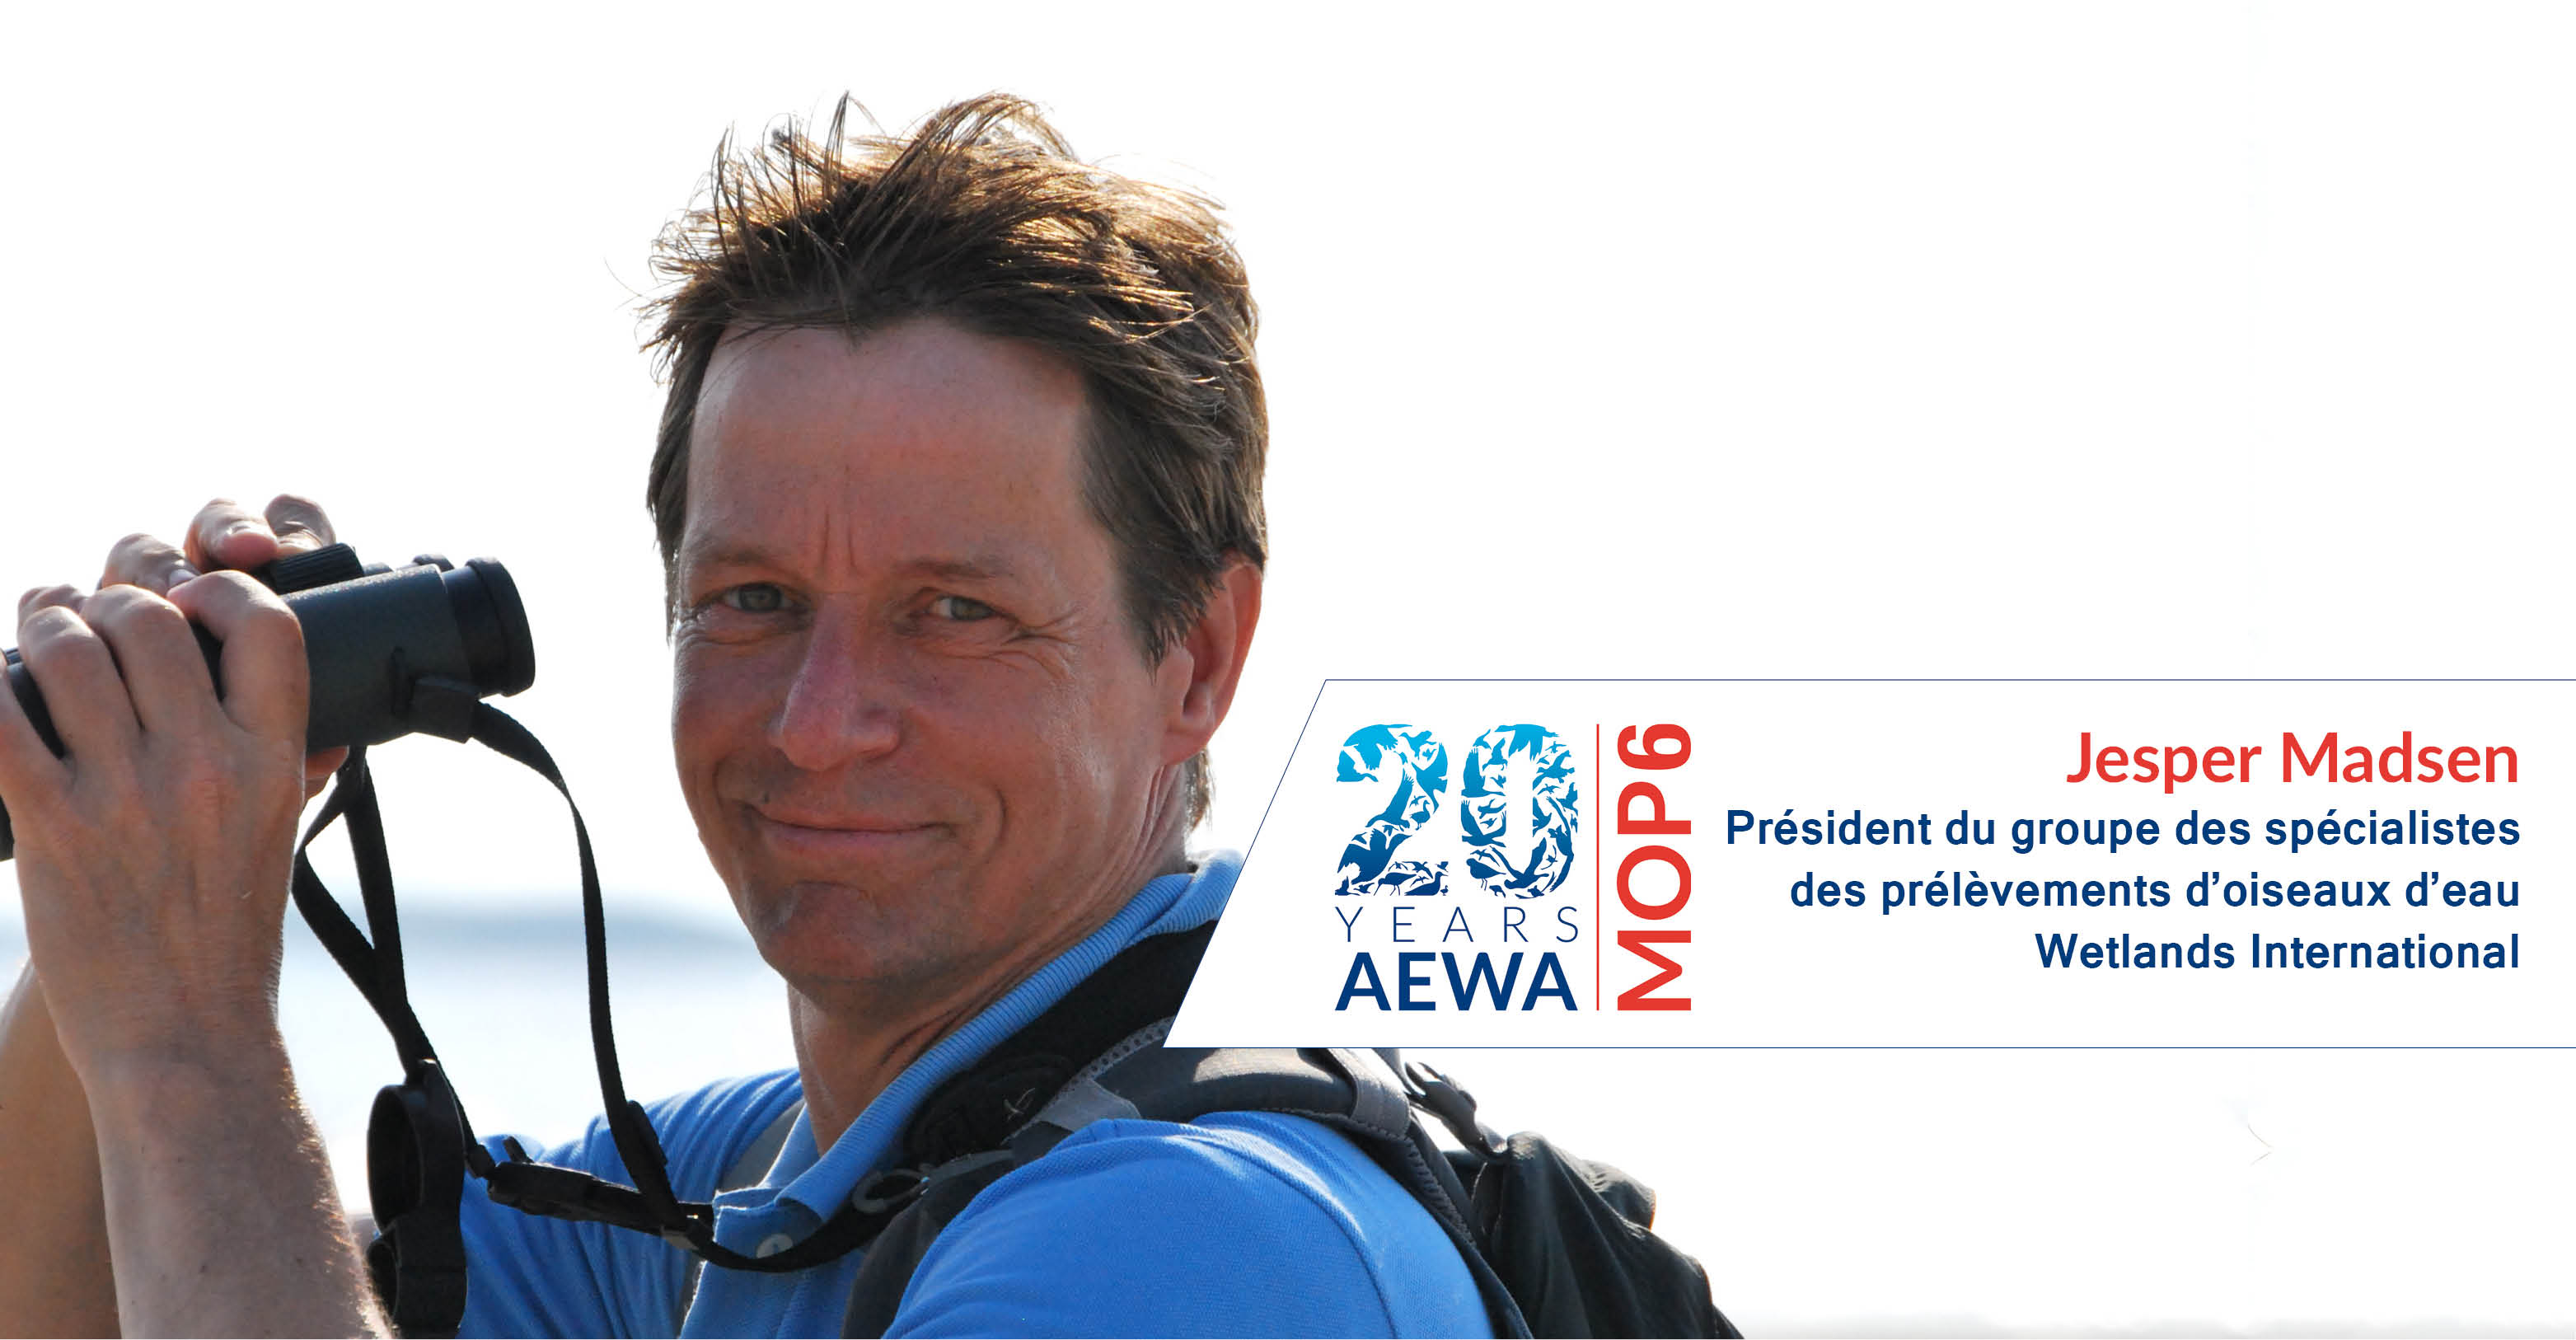 Jesper Madsen, Président du groupe des spécialistes des prélèvements d’oiseaux d’eau, Wetlands International 